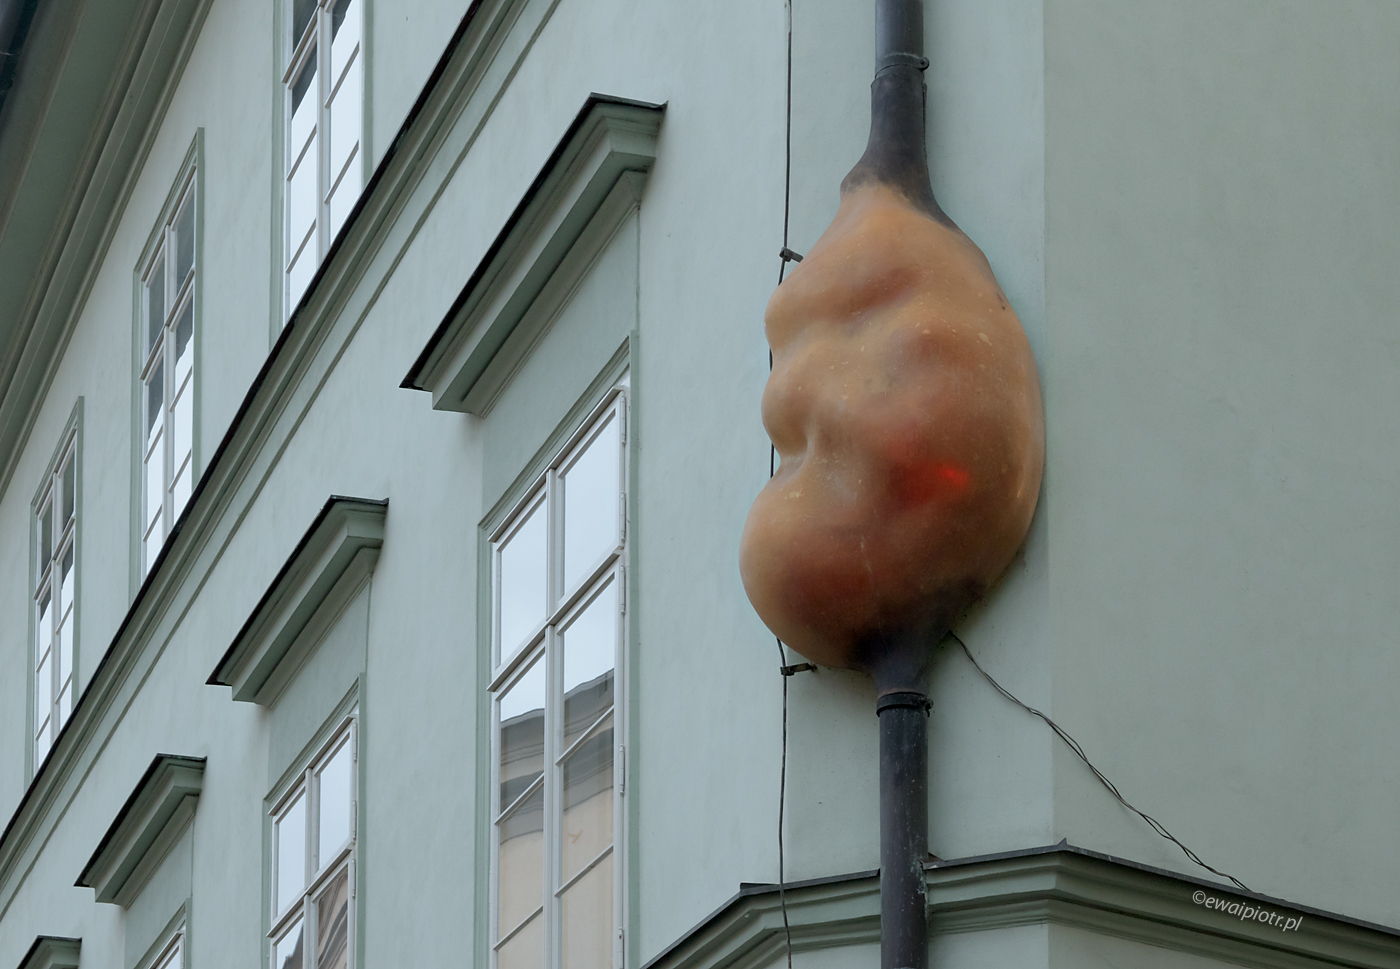 Alien Fetus - David Cerny, Praga, rzeźba, instalacja artystyczna, Obcy Zarodek